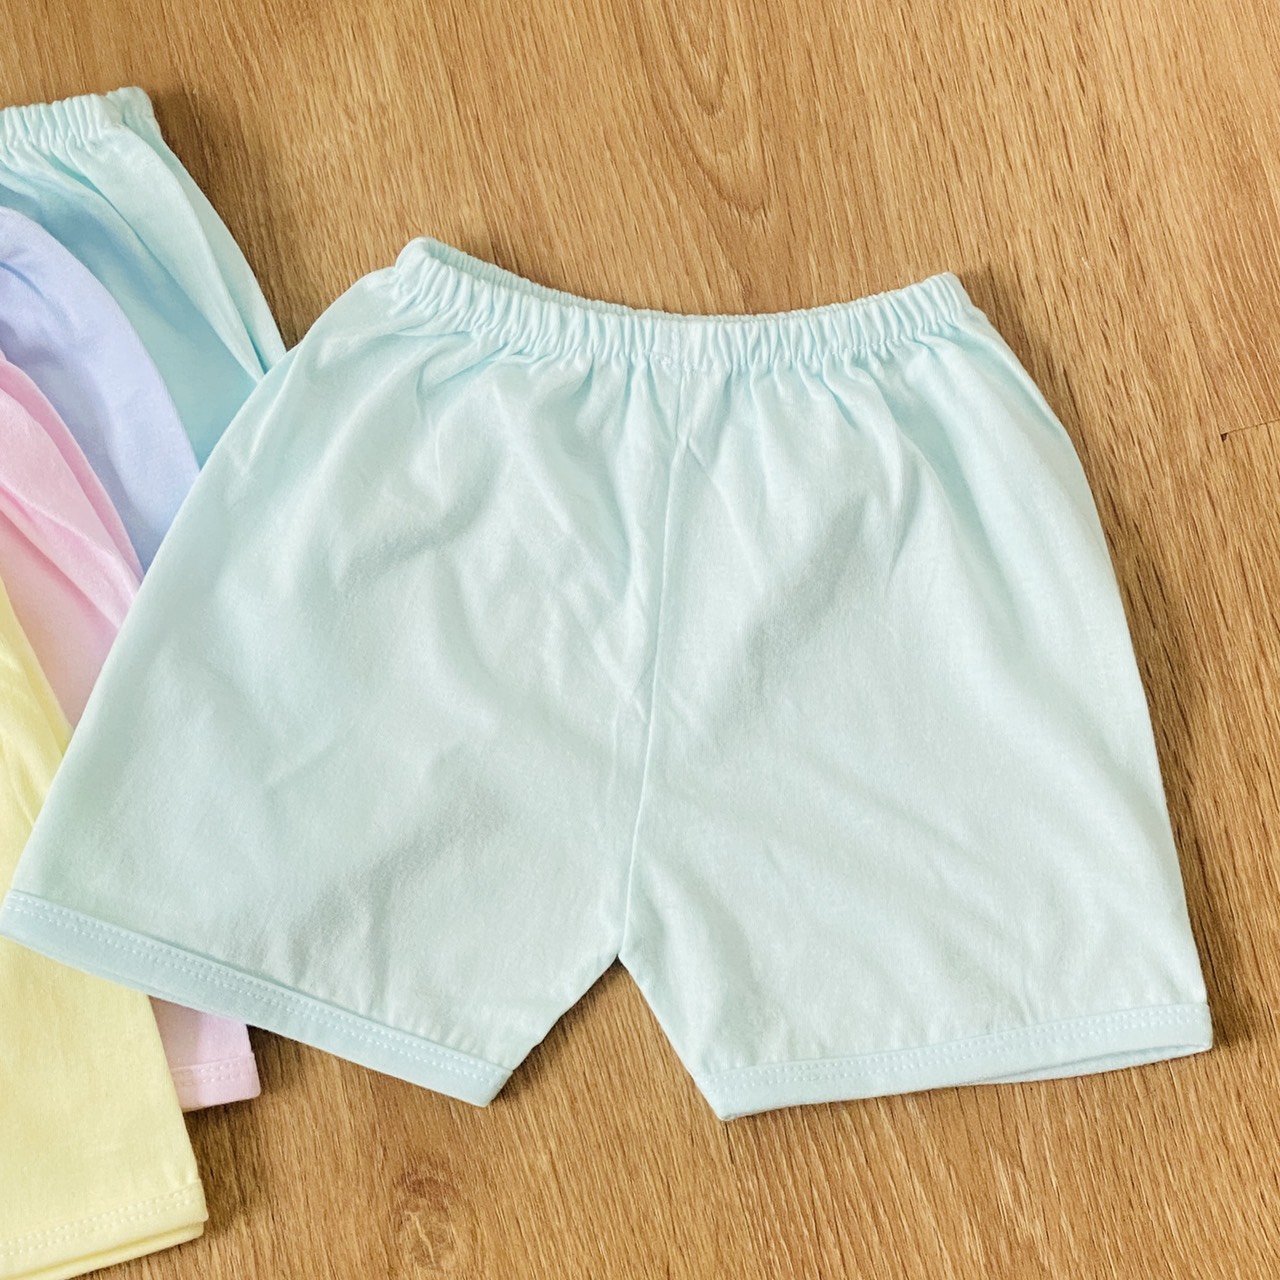 Hình ảnh Combo 5 quần đùi sơ sinh JOU cotton 100% màu nhạt cho bé trai, bé gái, quần áo sơ sinh chất vải mềm, mịn, thoáng mát, hàng Việt Nam chất lượng